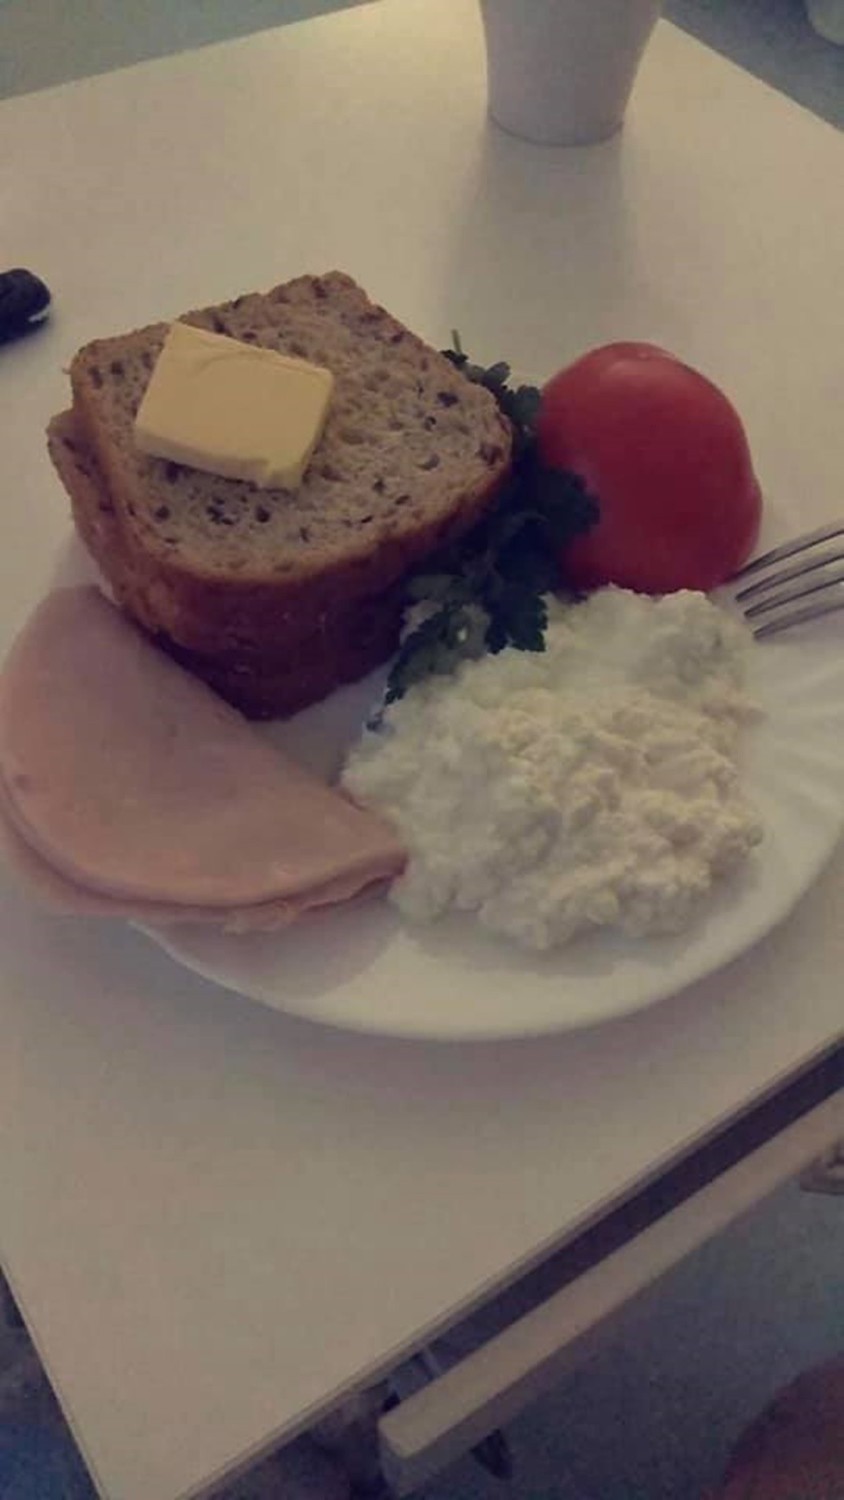 Tak karmią w lubelskich szpitalach. Czytelnicy wysłali nam zdjęcia swoich posiłków. Zobaczcie!